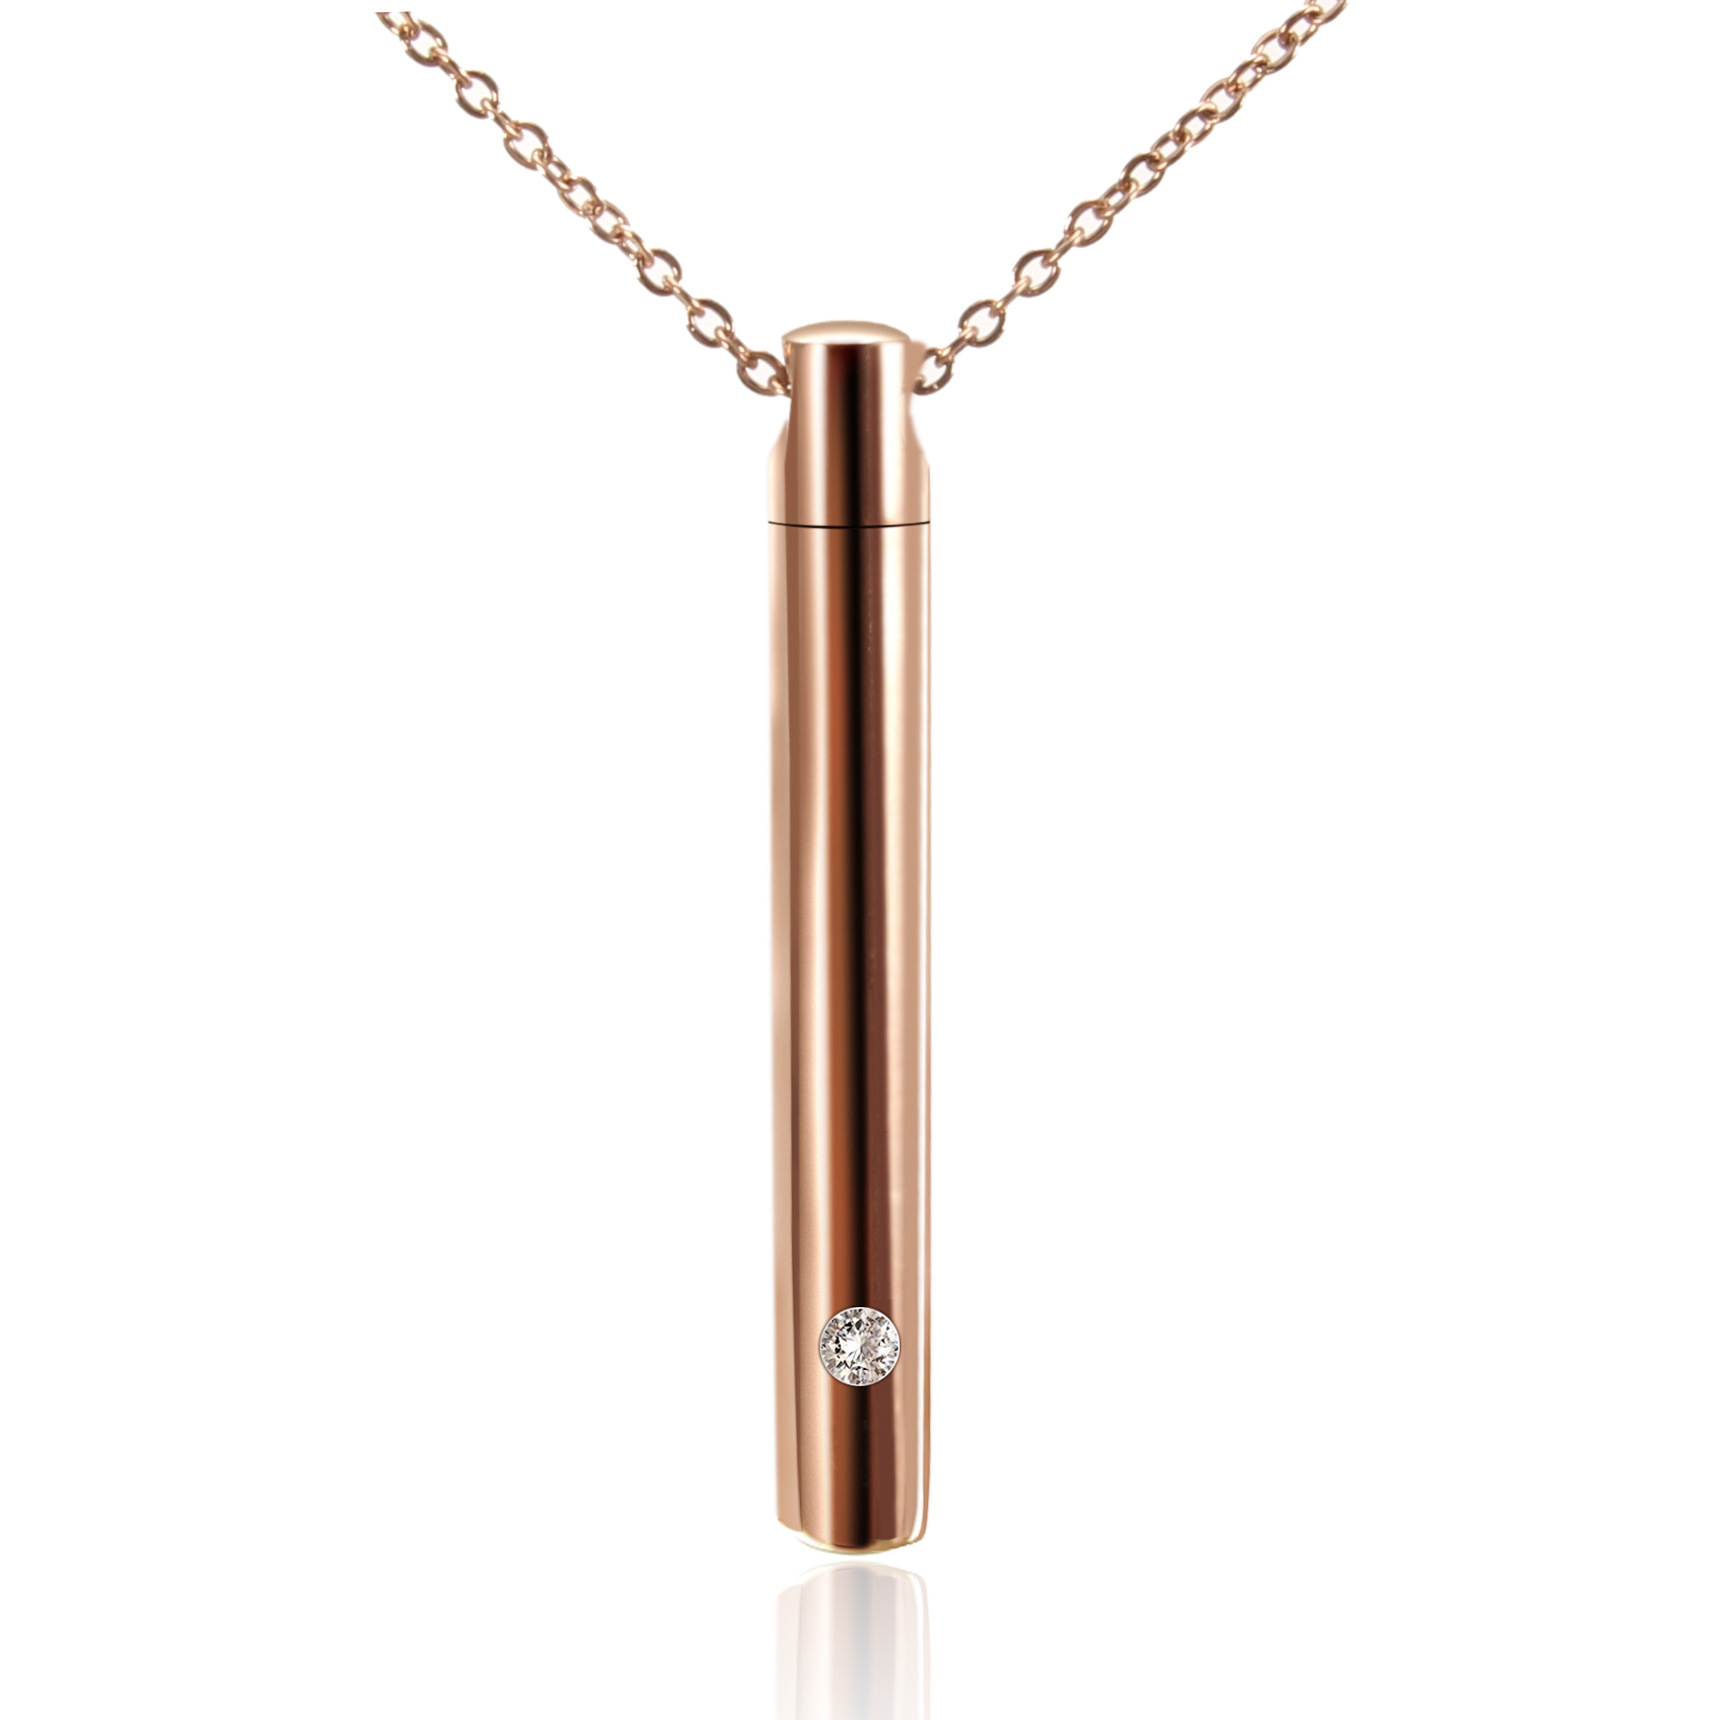 2:Titanium steel rose gold pendant (chain included)